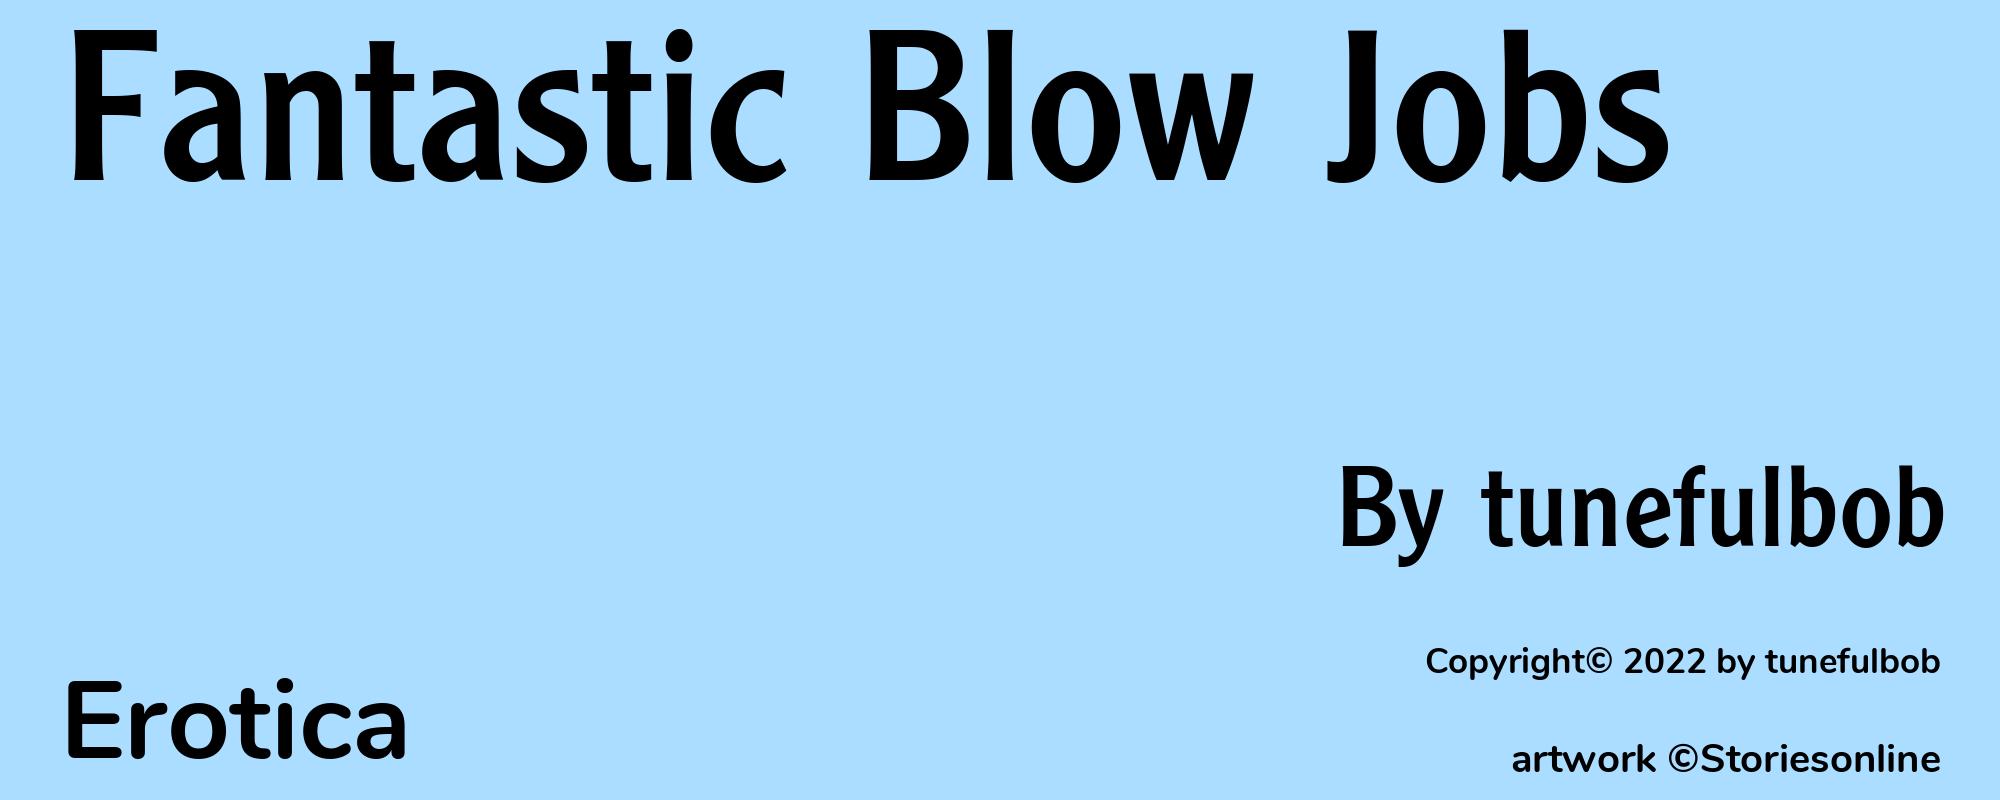 Fantastic Blow Jobs - Cover